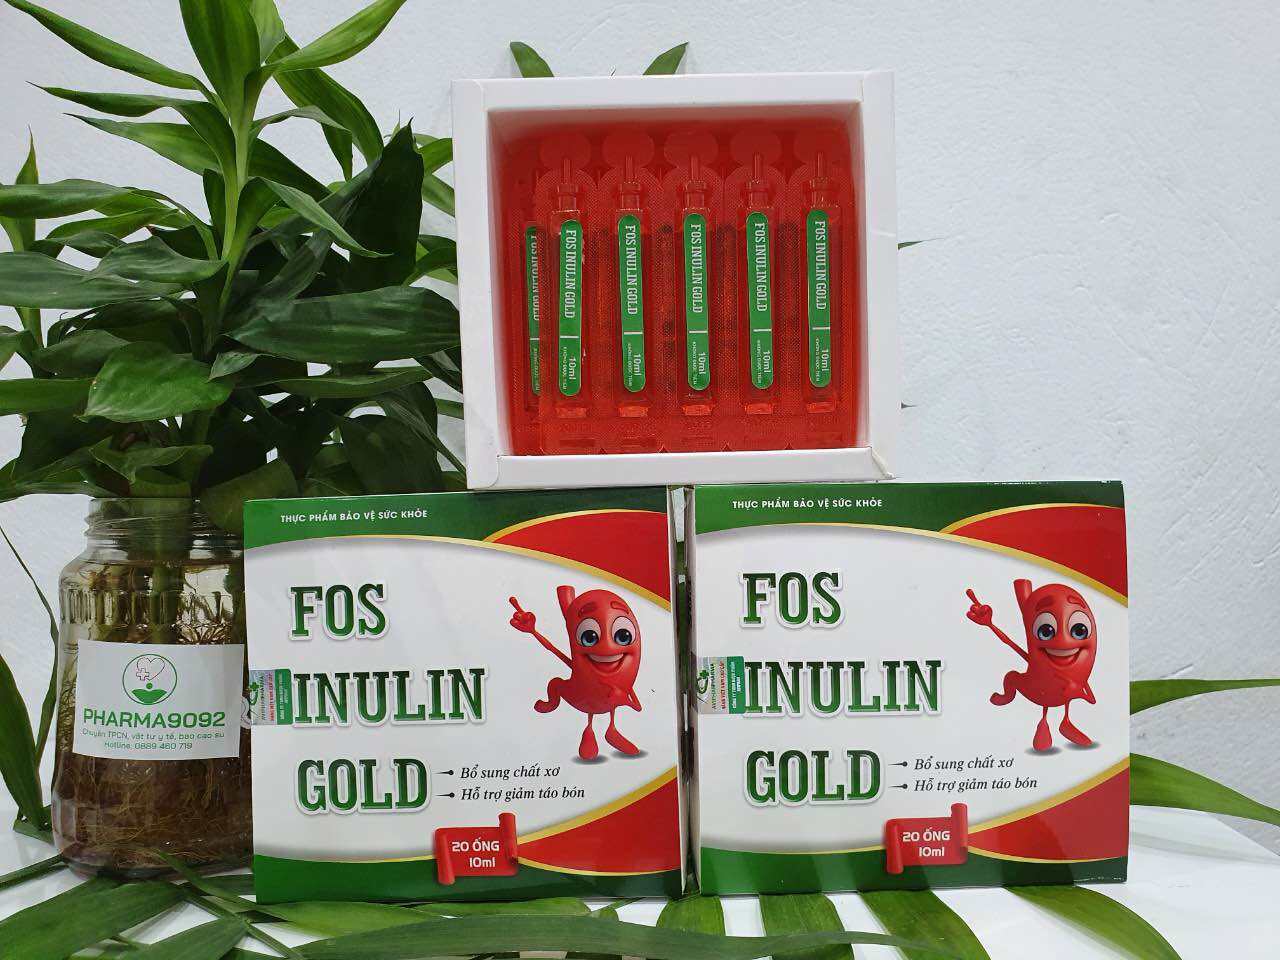 FOS INULIN GOLD  Bổ sung chất xơ, hỗ trợ giảm táo bón